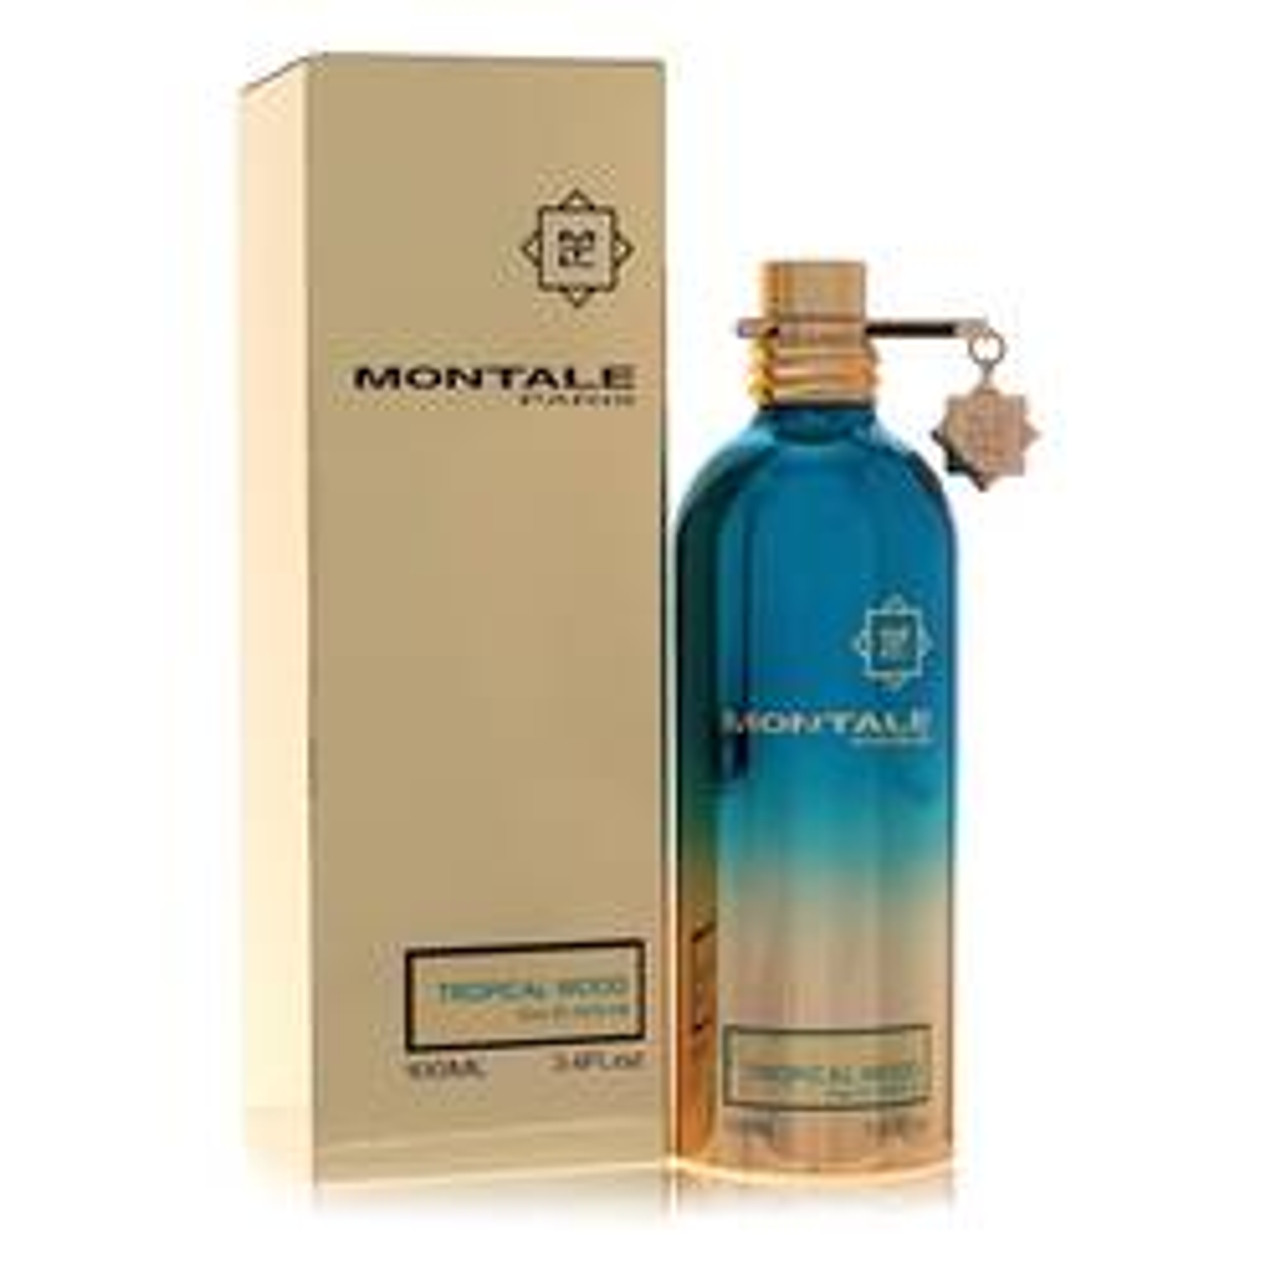 Montale Tropical Wood Perfume By Montale Eau De Parfum Spray (Unisex) 3.4 oz for Women - *Pre-Order